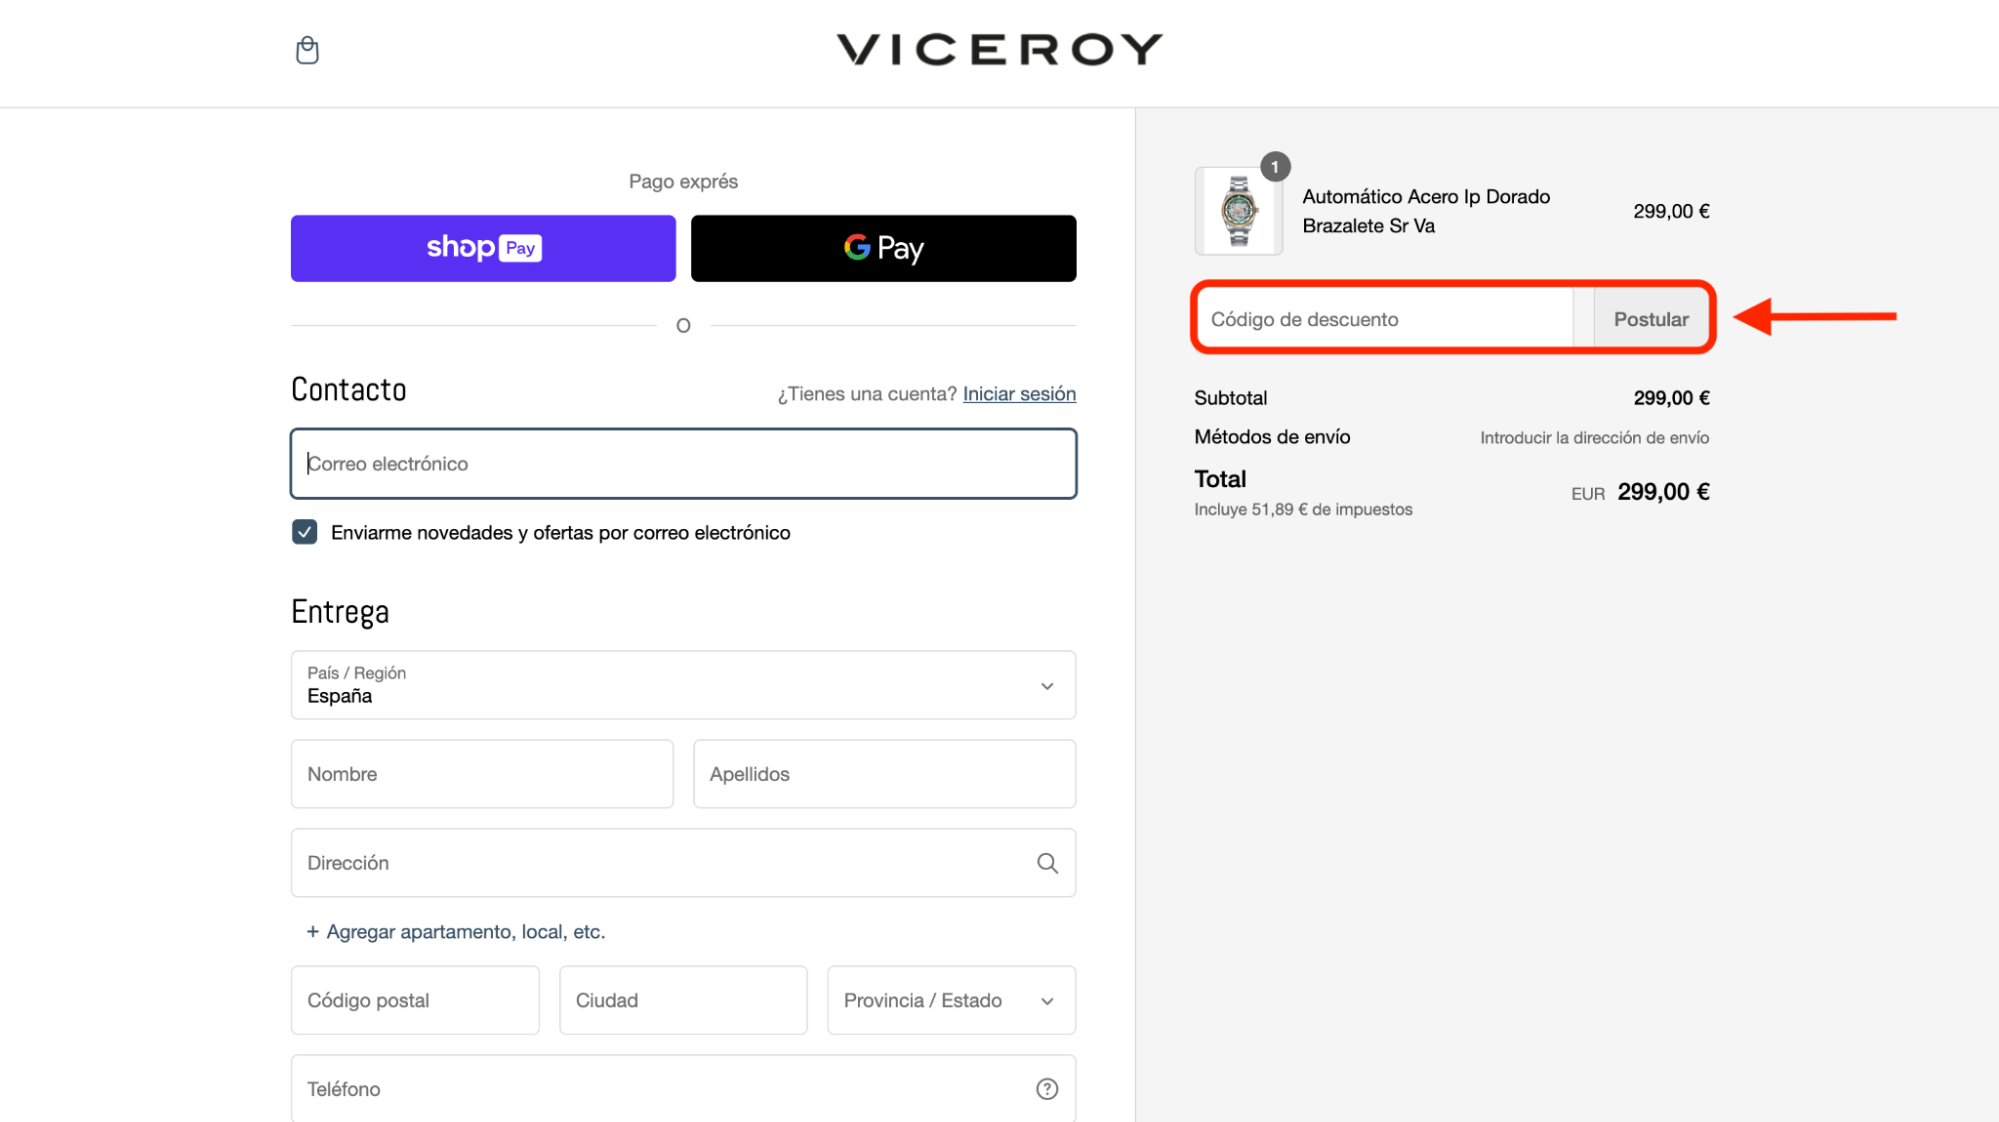 Imagen 2: Usar código promocional en Viceroy